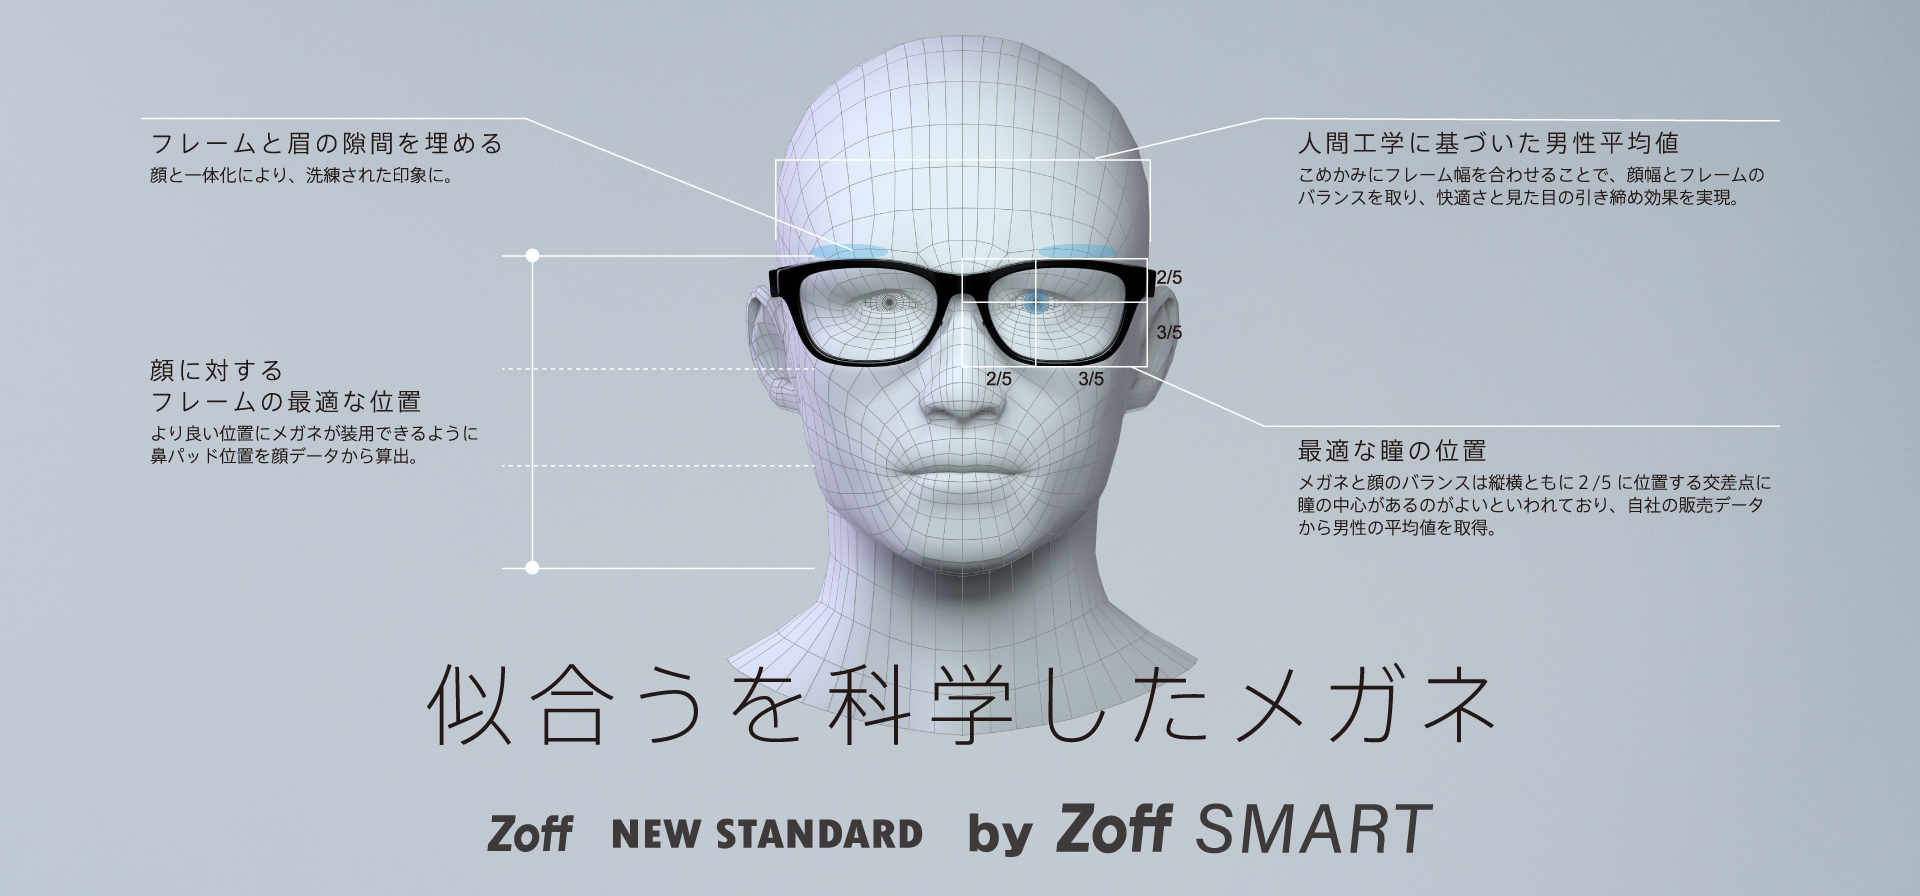 【Zoff】男性の顔に似合うベストバランスで設計されたZoff NEW STANDARDから、軽量モデル「Zoff SMART」が登場。